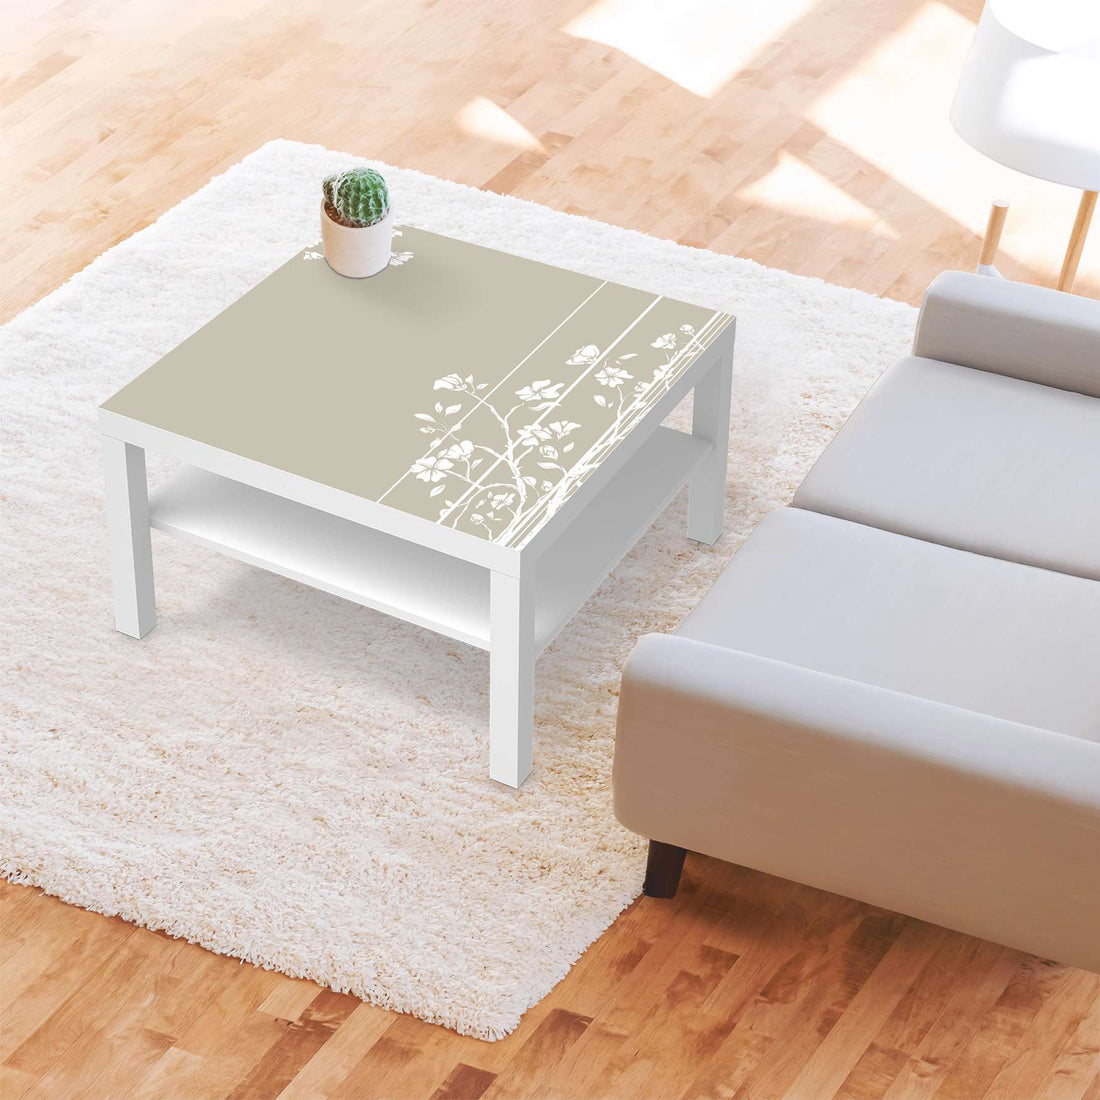 Selbstklebende Folie Florals Plain 3 - IKEA Lack Tisch 78x78 cm - Wohnzimmer